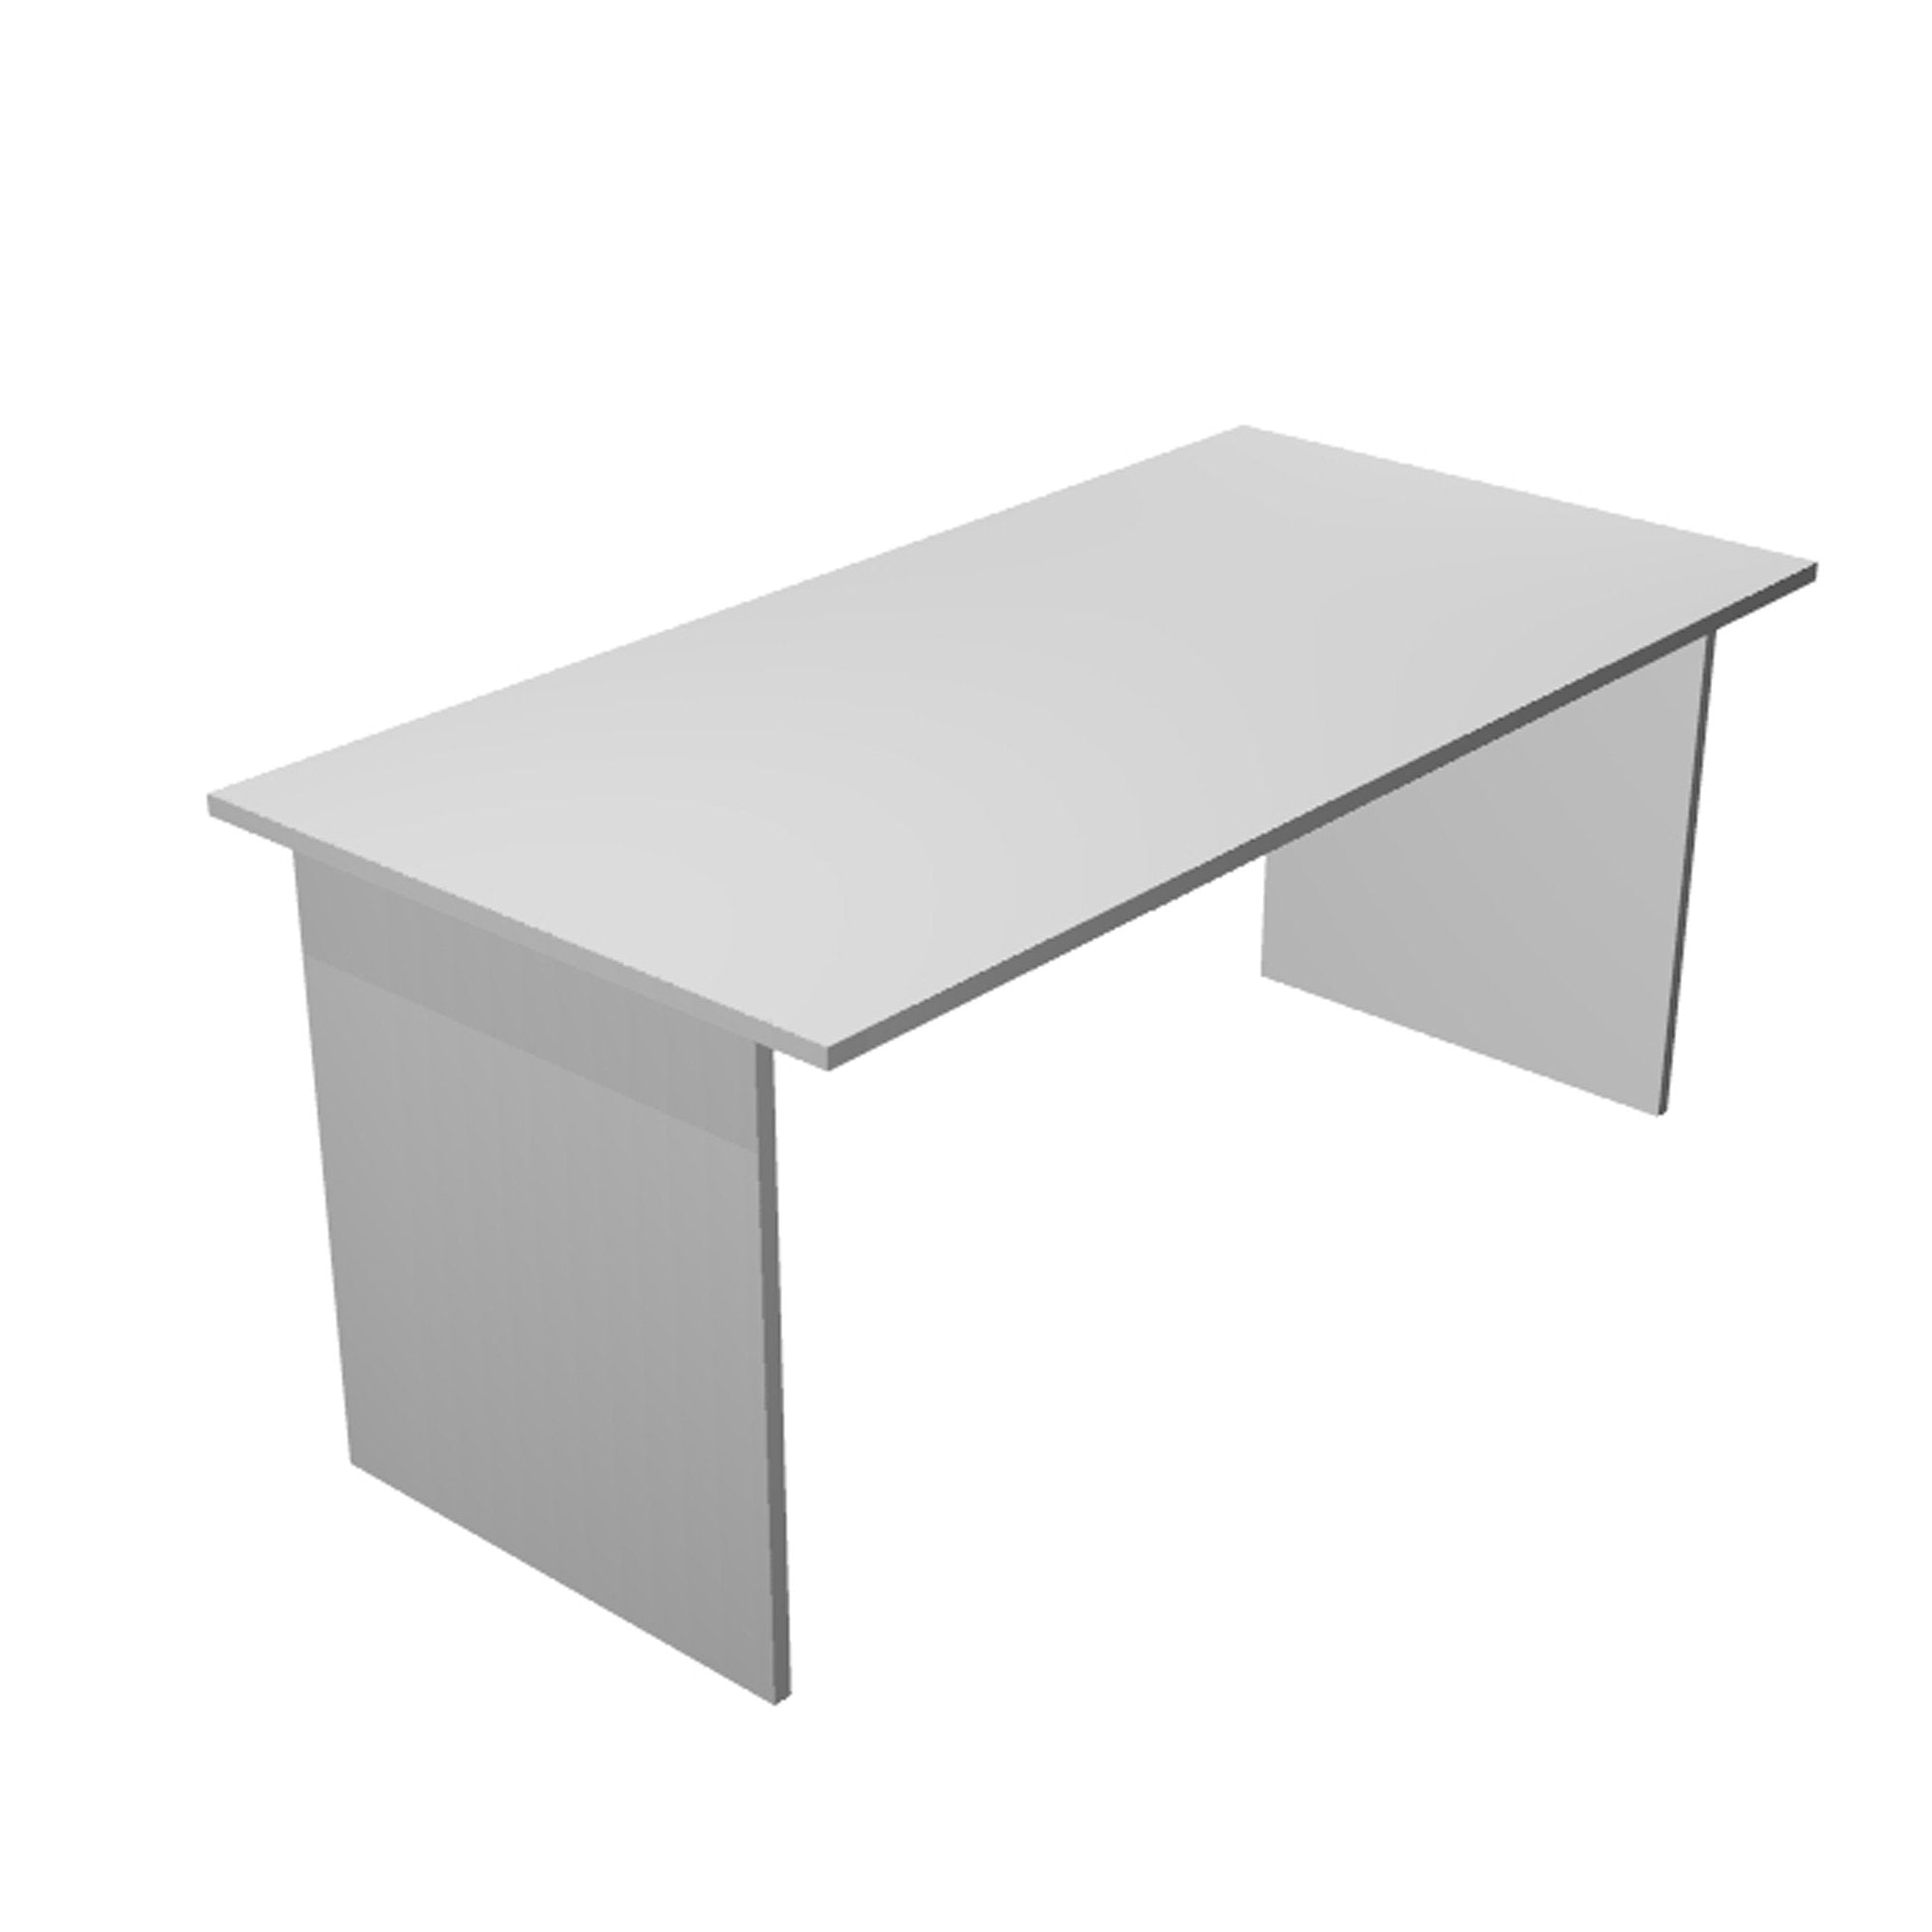 artexport-scrivania-lineare-160x80cm-bianco-easy